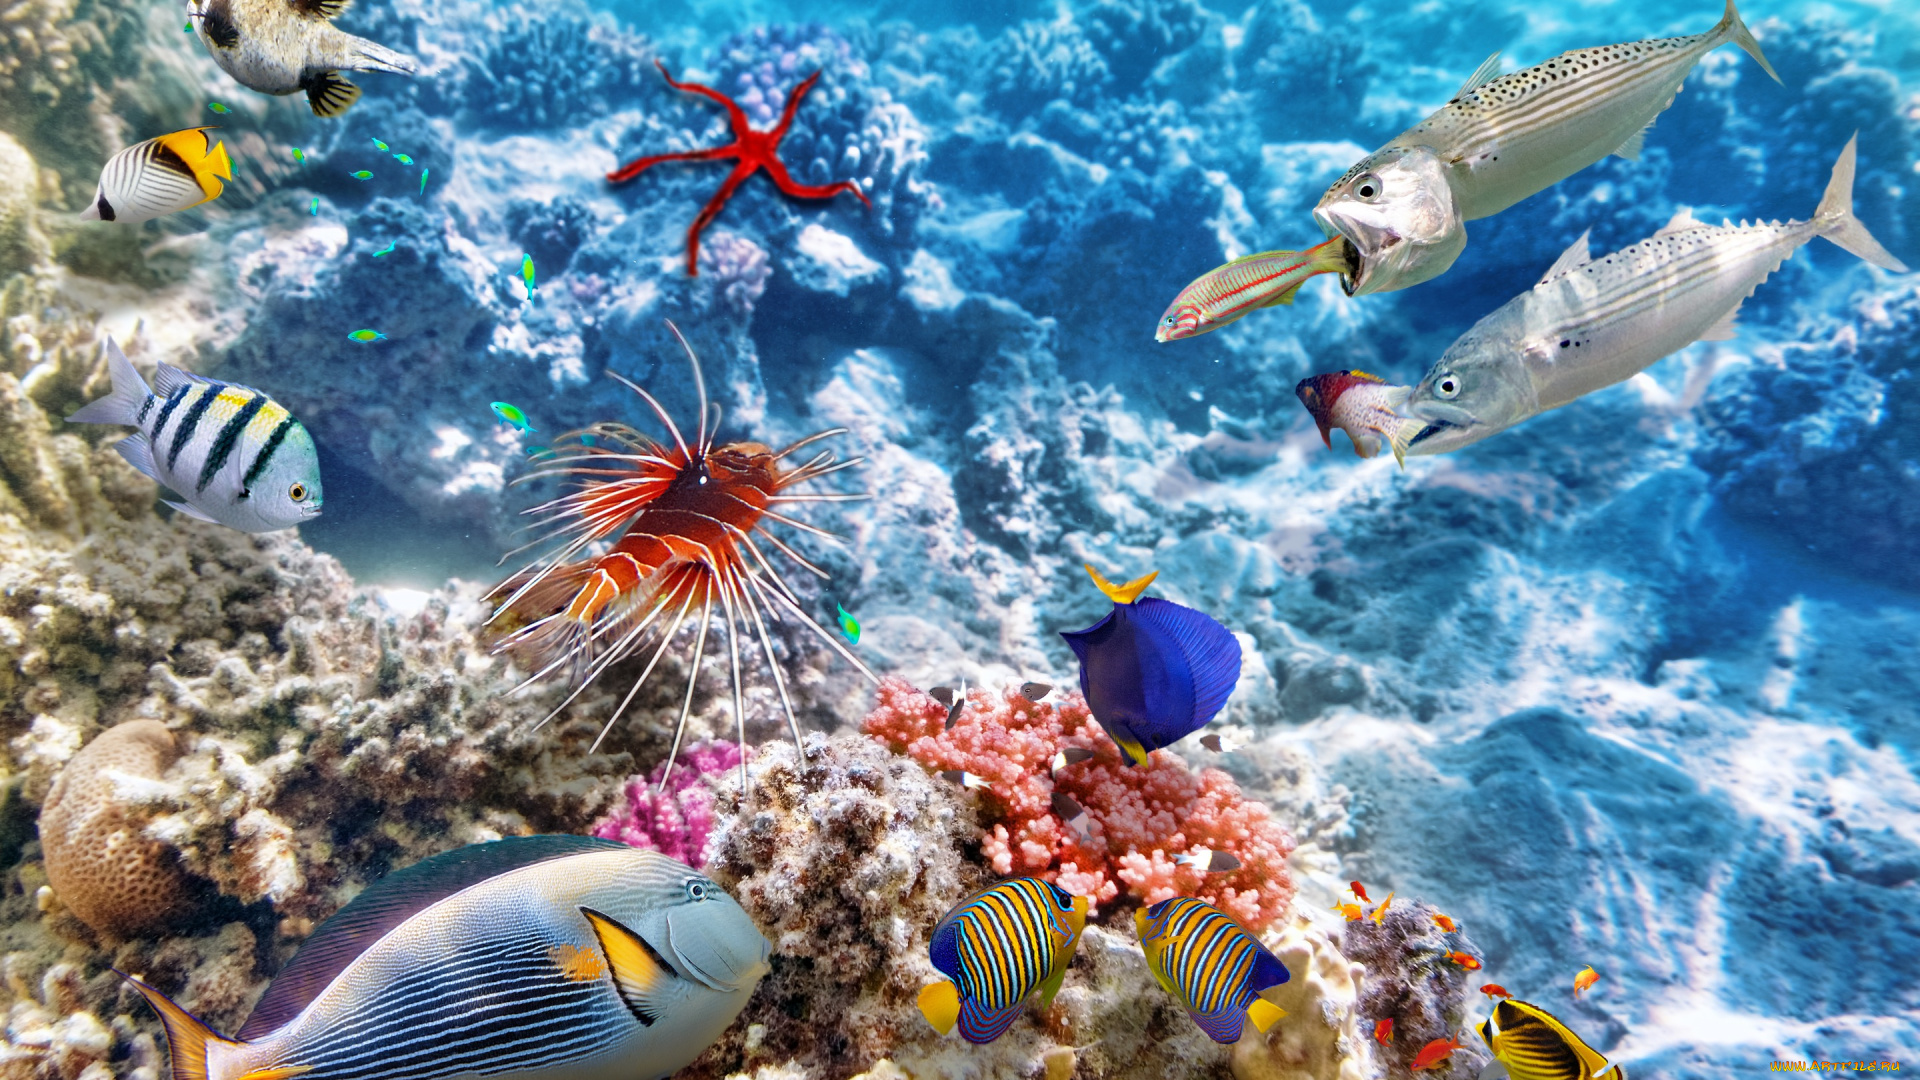 животные, рыбы, ocean, fishes, tropical, reef, coral, world, океан, коралловый, риф, рыбки, underwater, подводный, мир